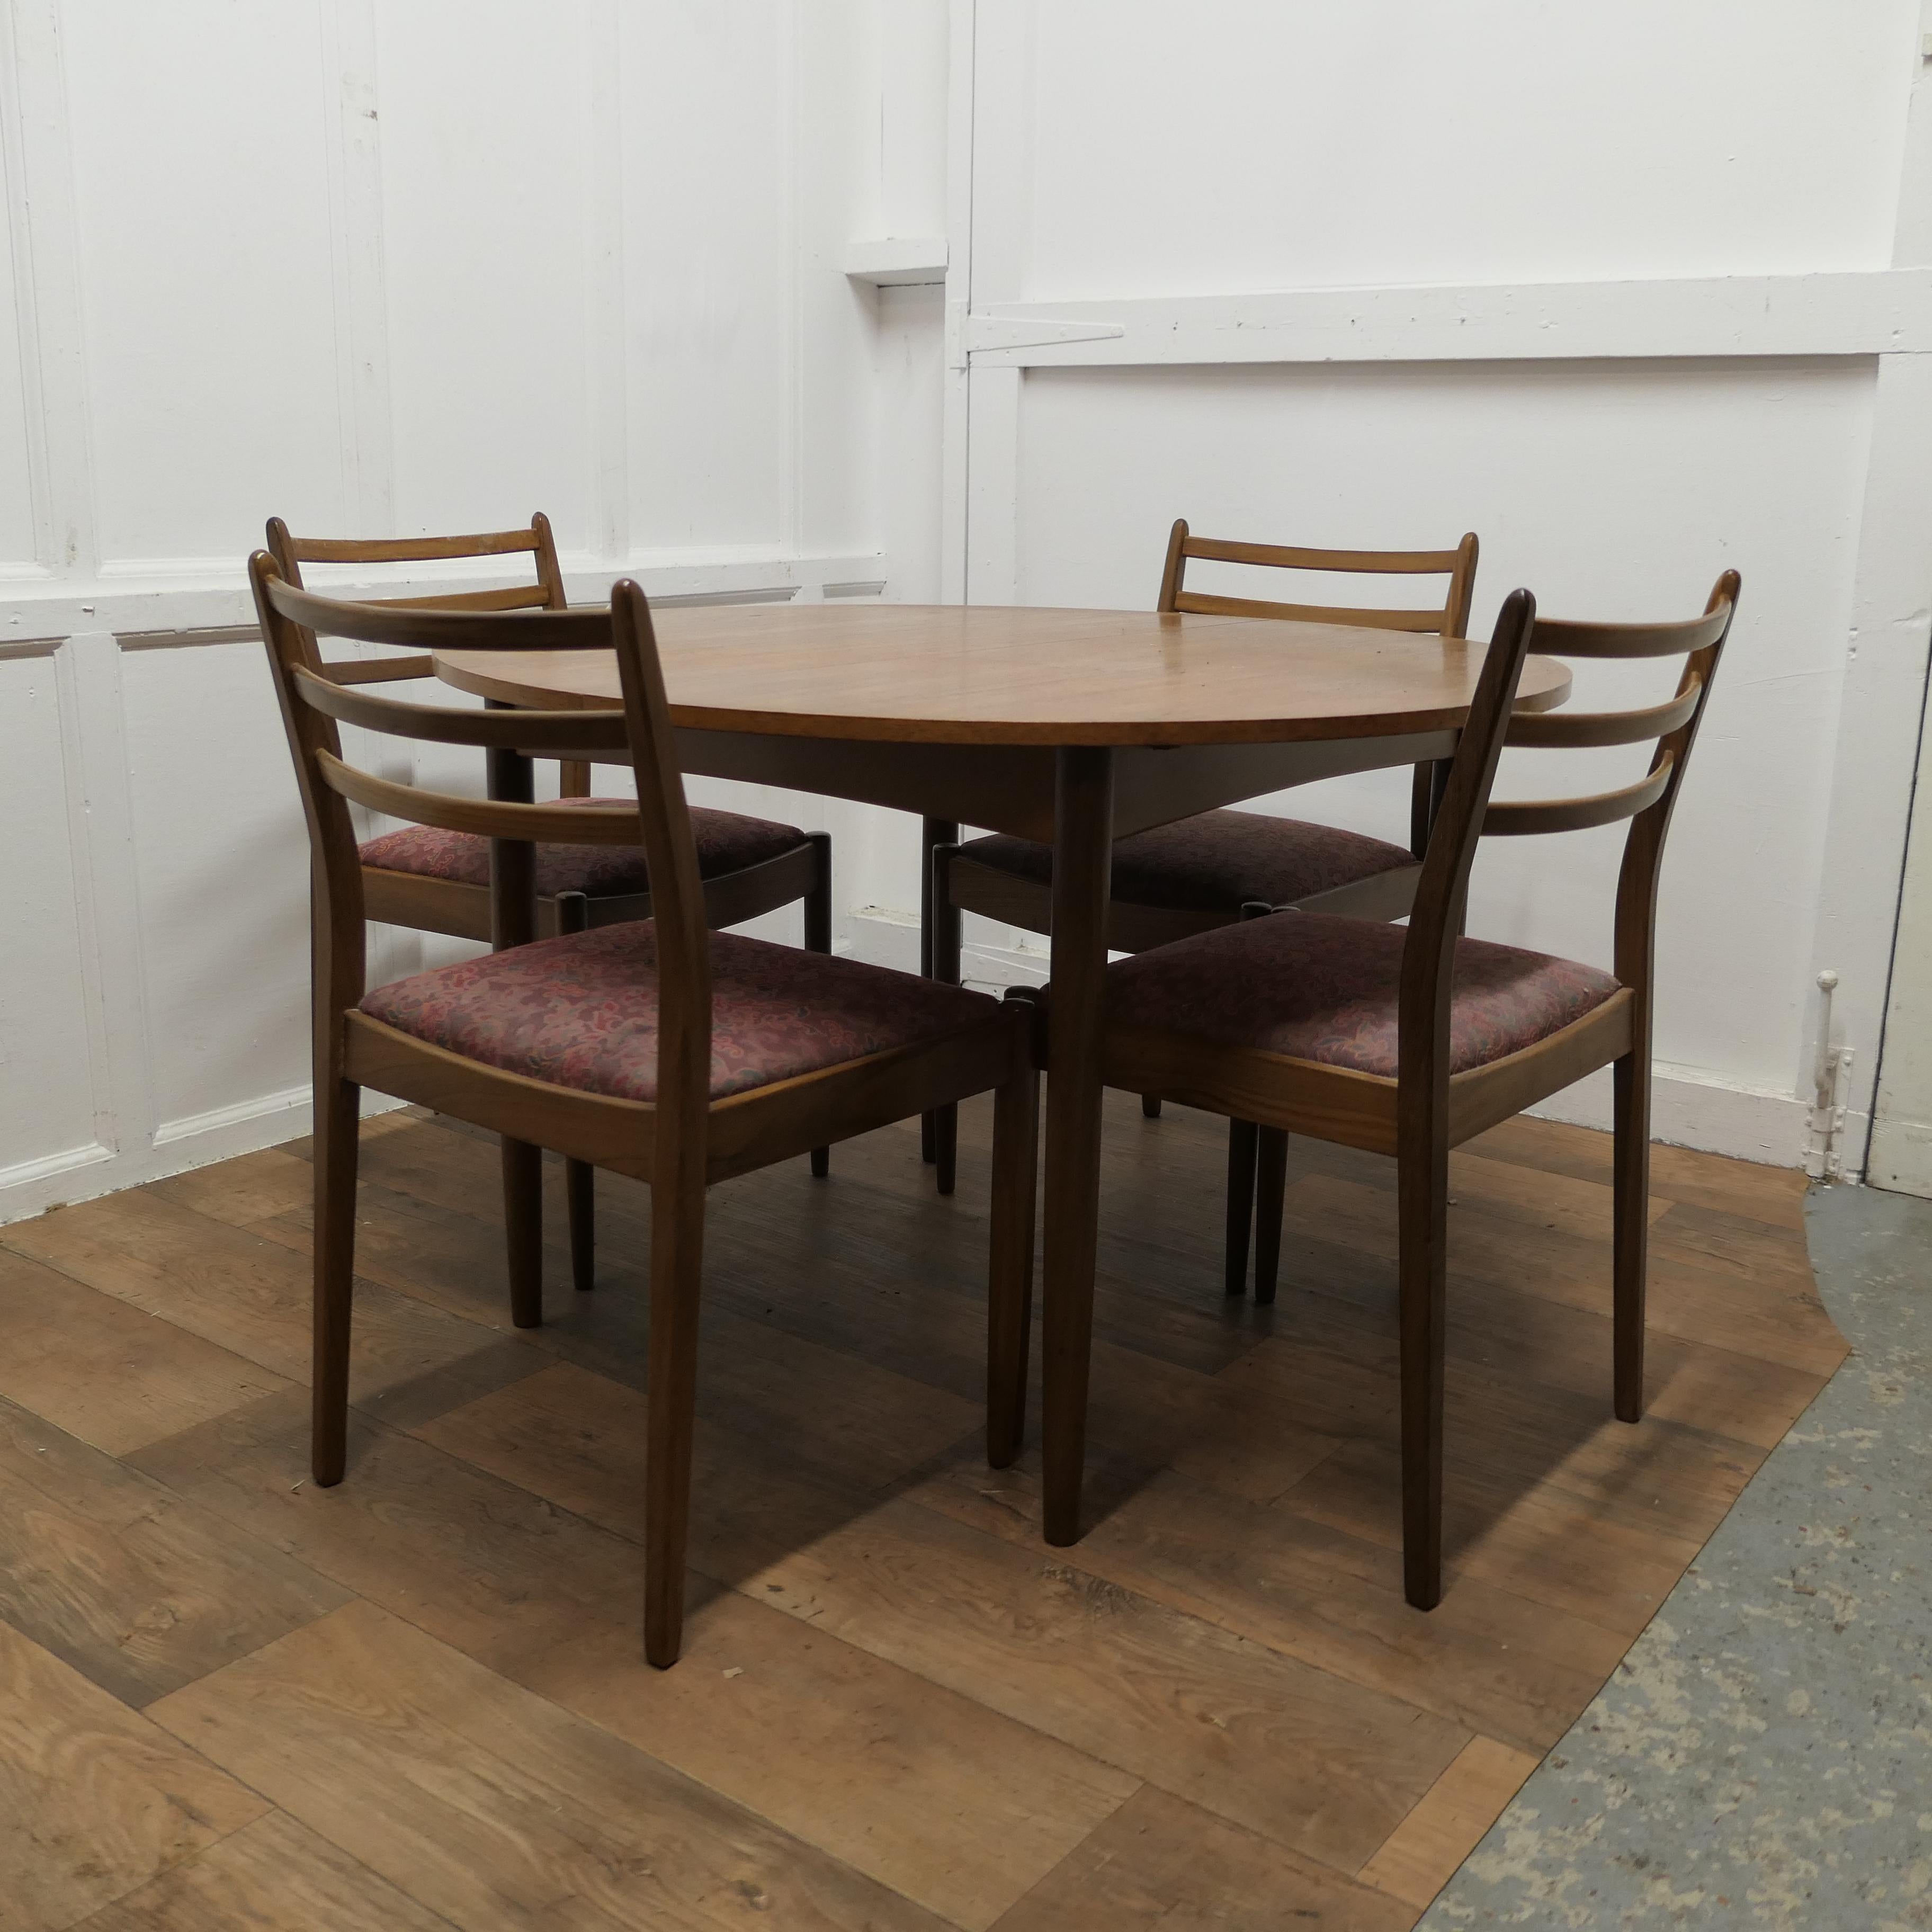 Mitte des Jahrhunderts G Plan Runder ausziehbarer Esstisch und 4 Stühle

Der Tisch ist aus Teakholz aus der Fresco Danish Serie, die in den 1960er und 1970er Jahren hergestellt wurde.
Der Tisch ist rund, wenn er geschlossen ist, und lässt sich mit